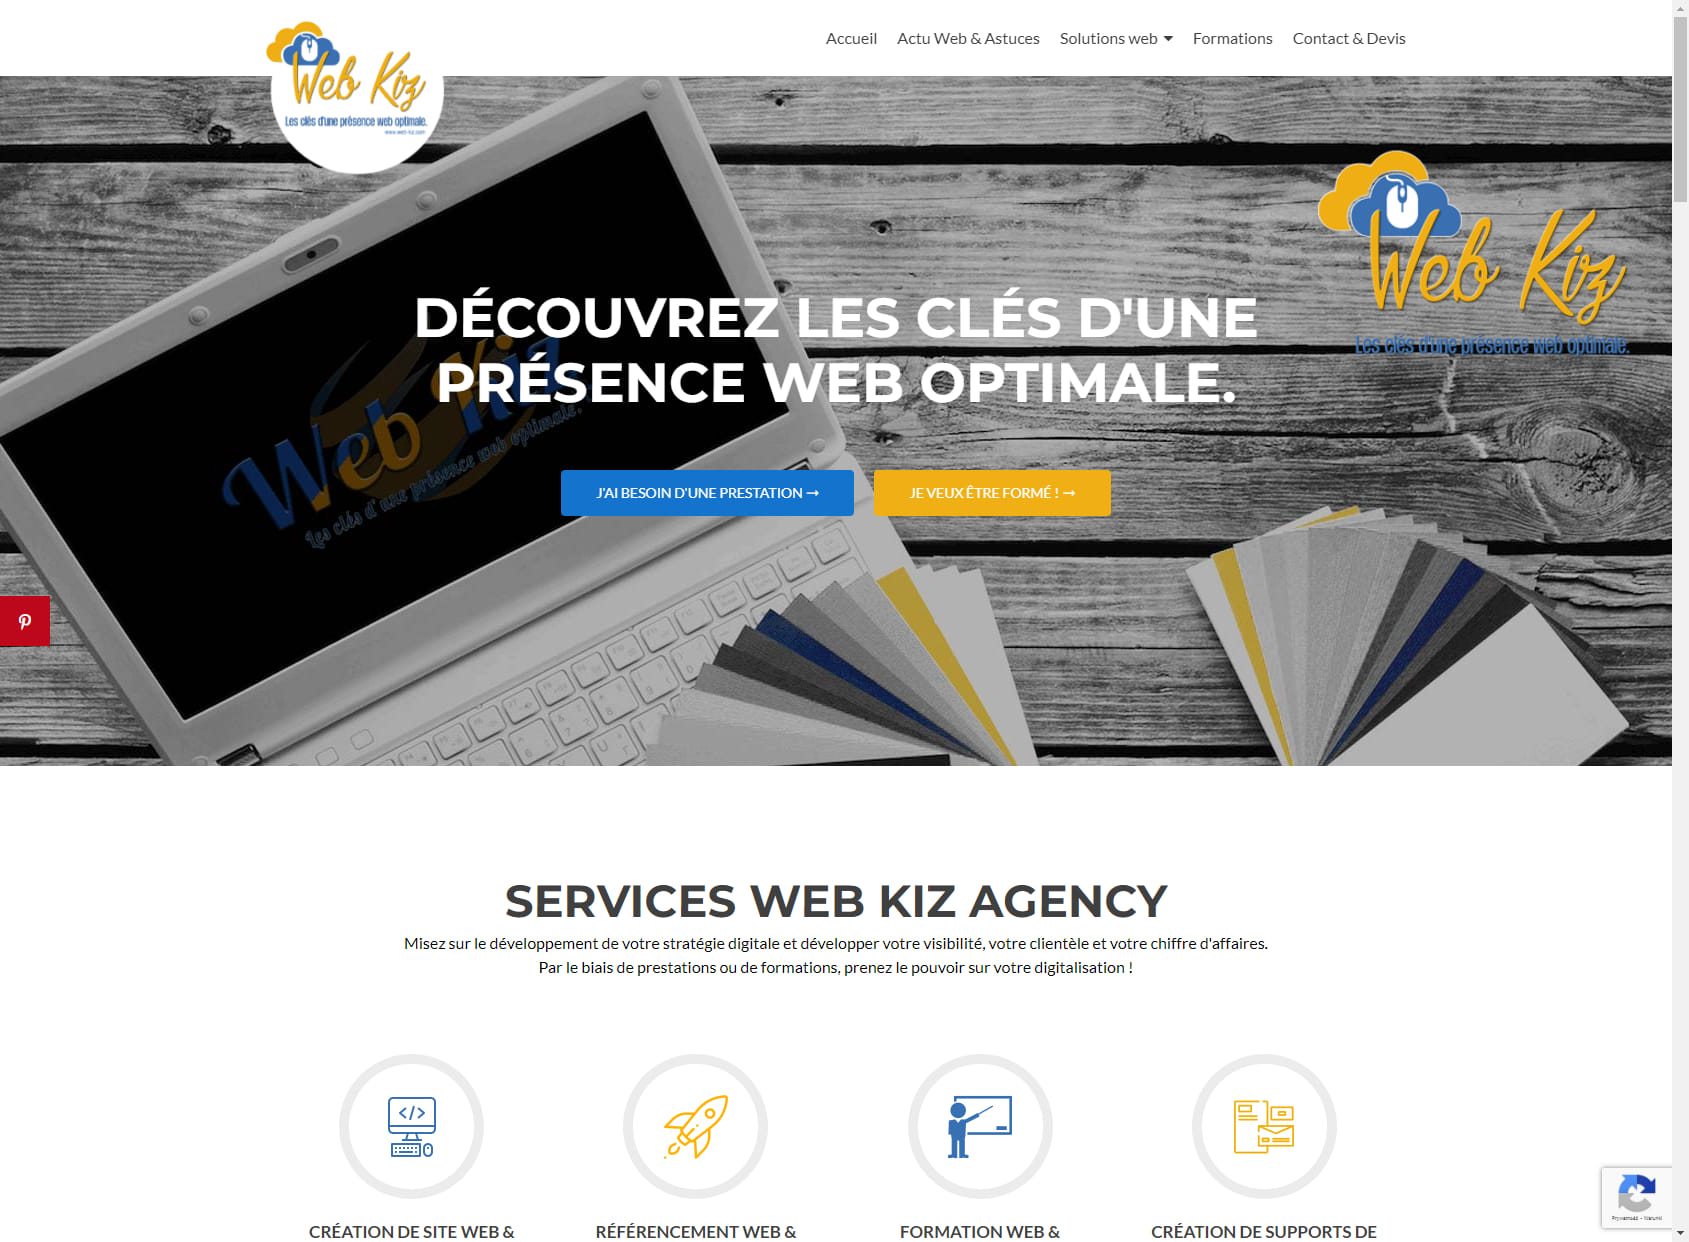 Web Kiz Agency